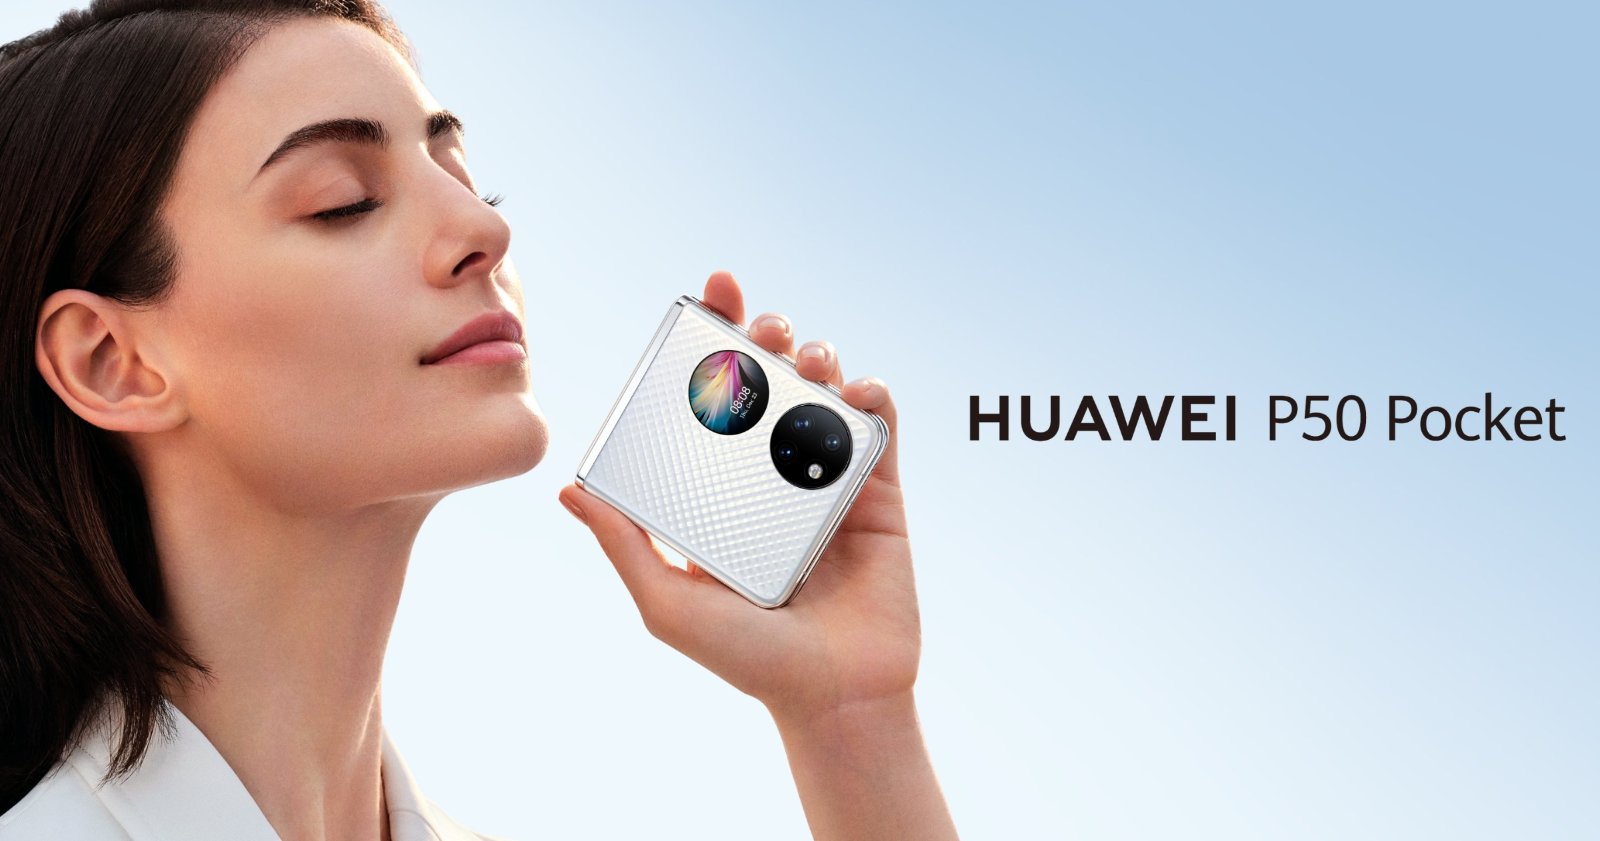 Huawei presentó oficialmente el nuevo Huawei P50 Pocket, su más reciente smartphone plegable. Se trata de la última expresión del ADN